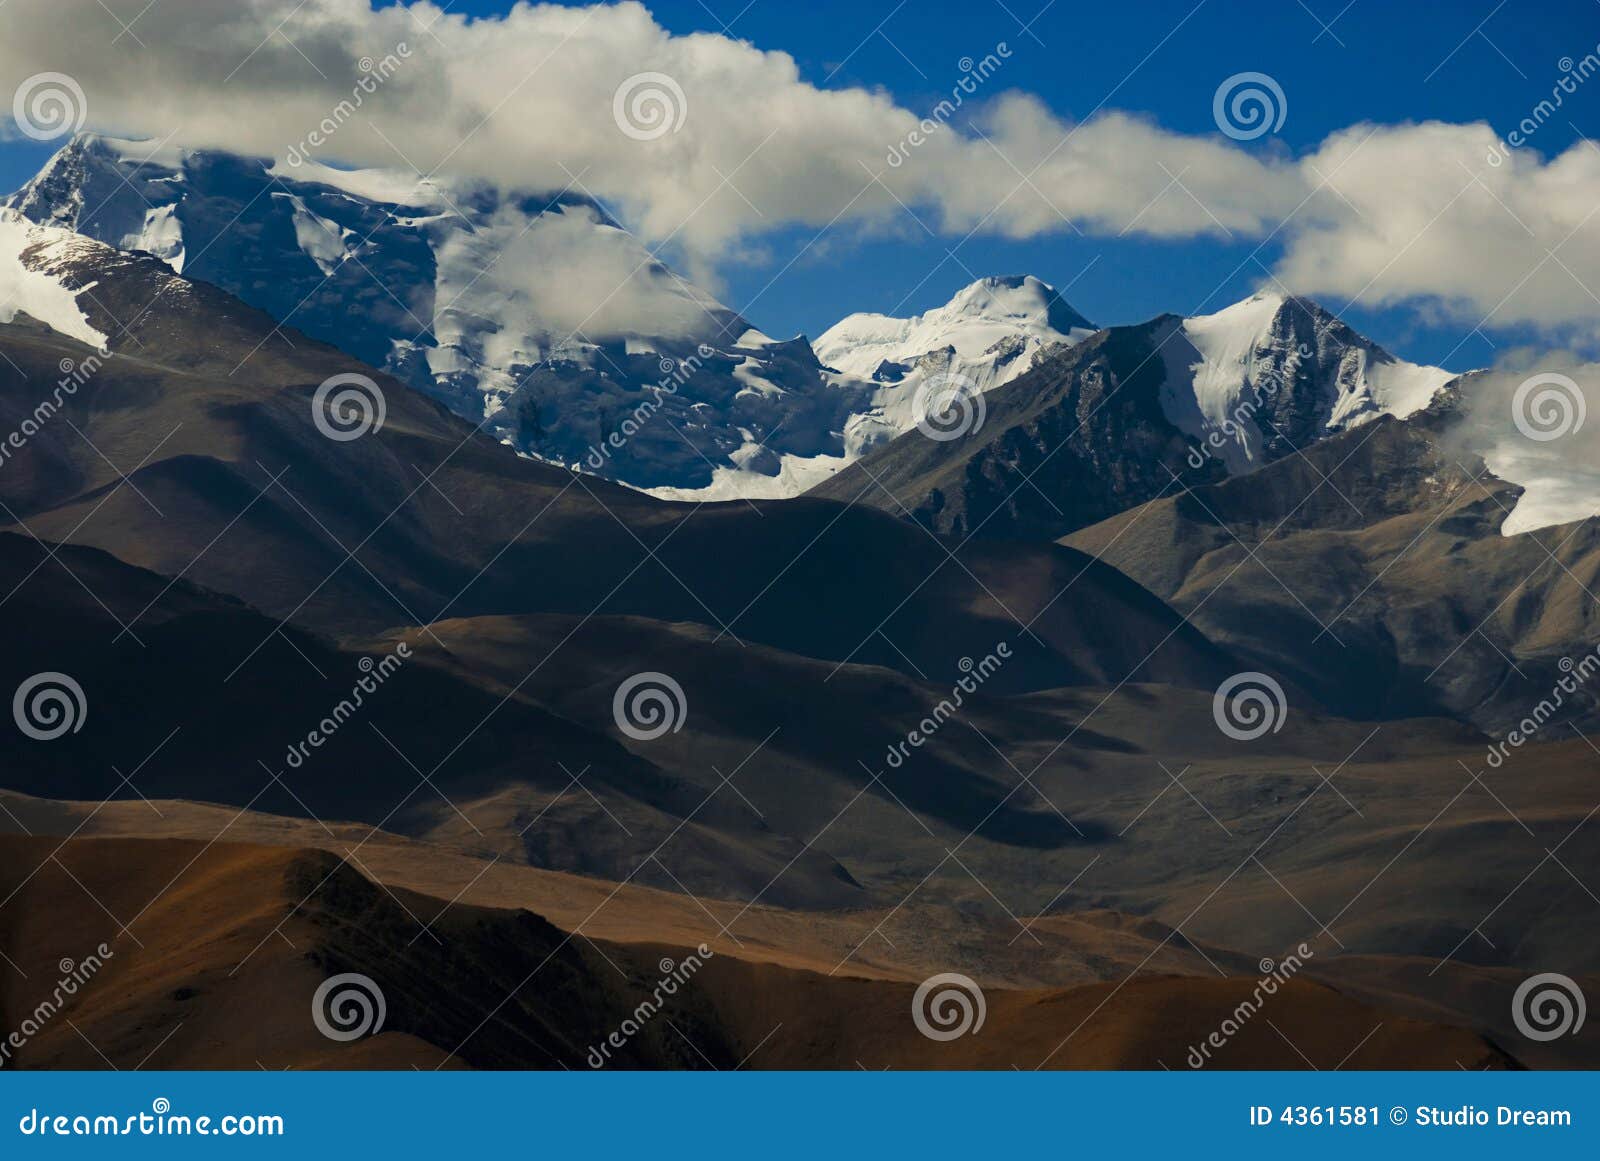 himalaya mountains tibet